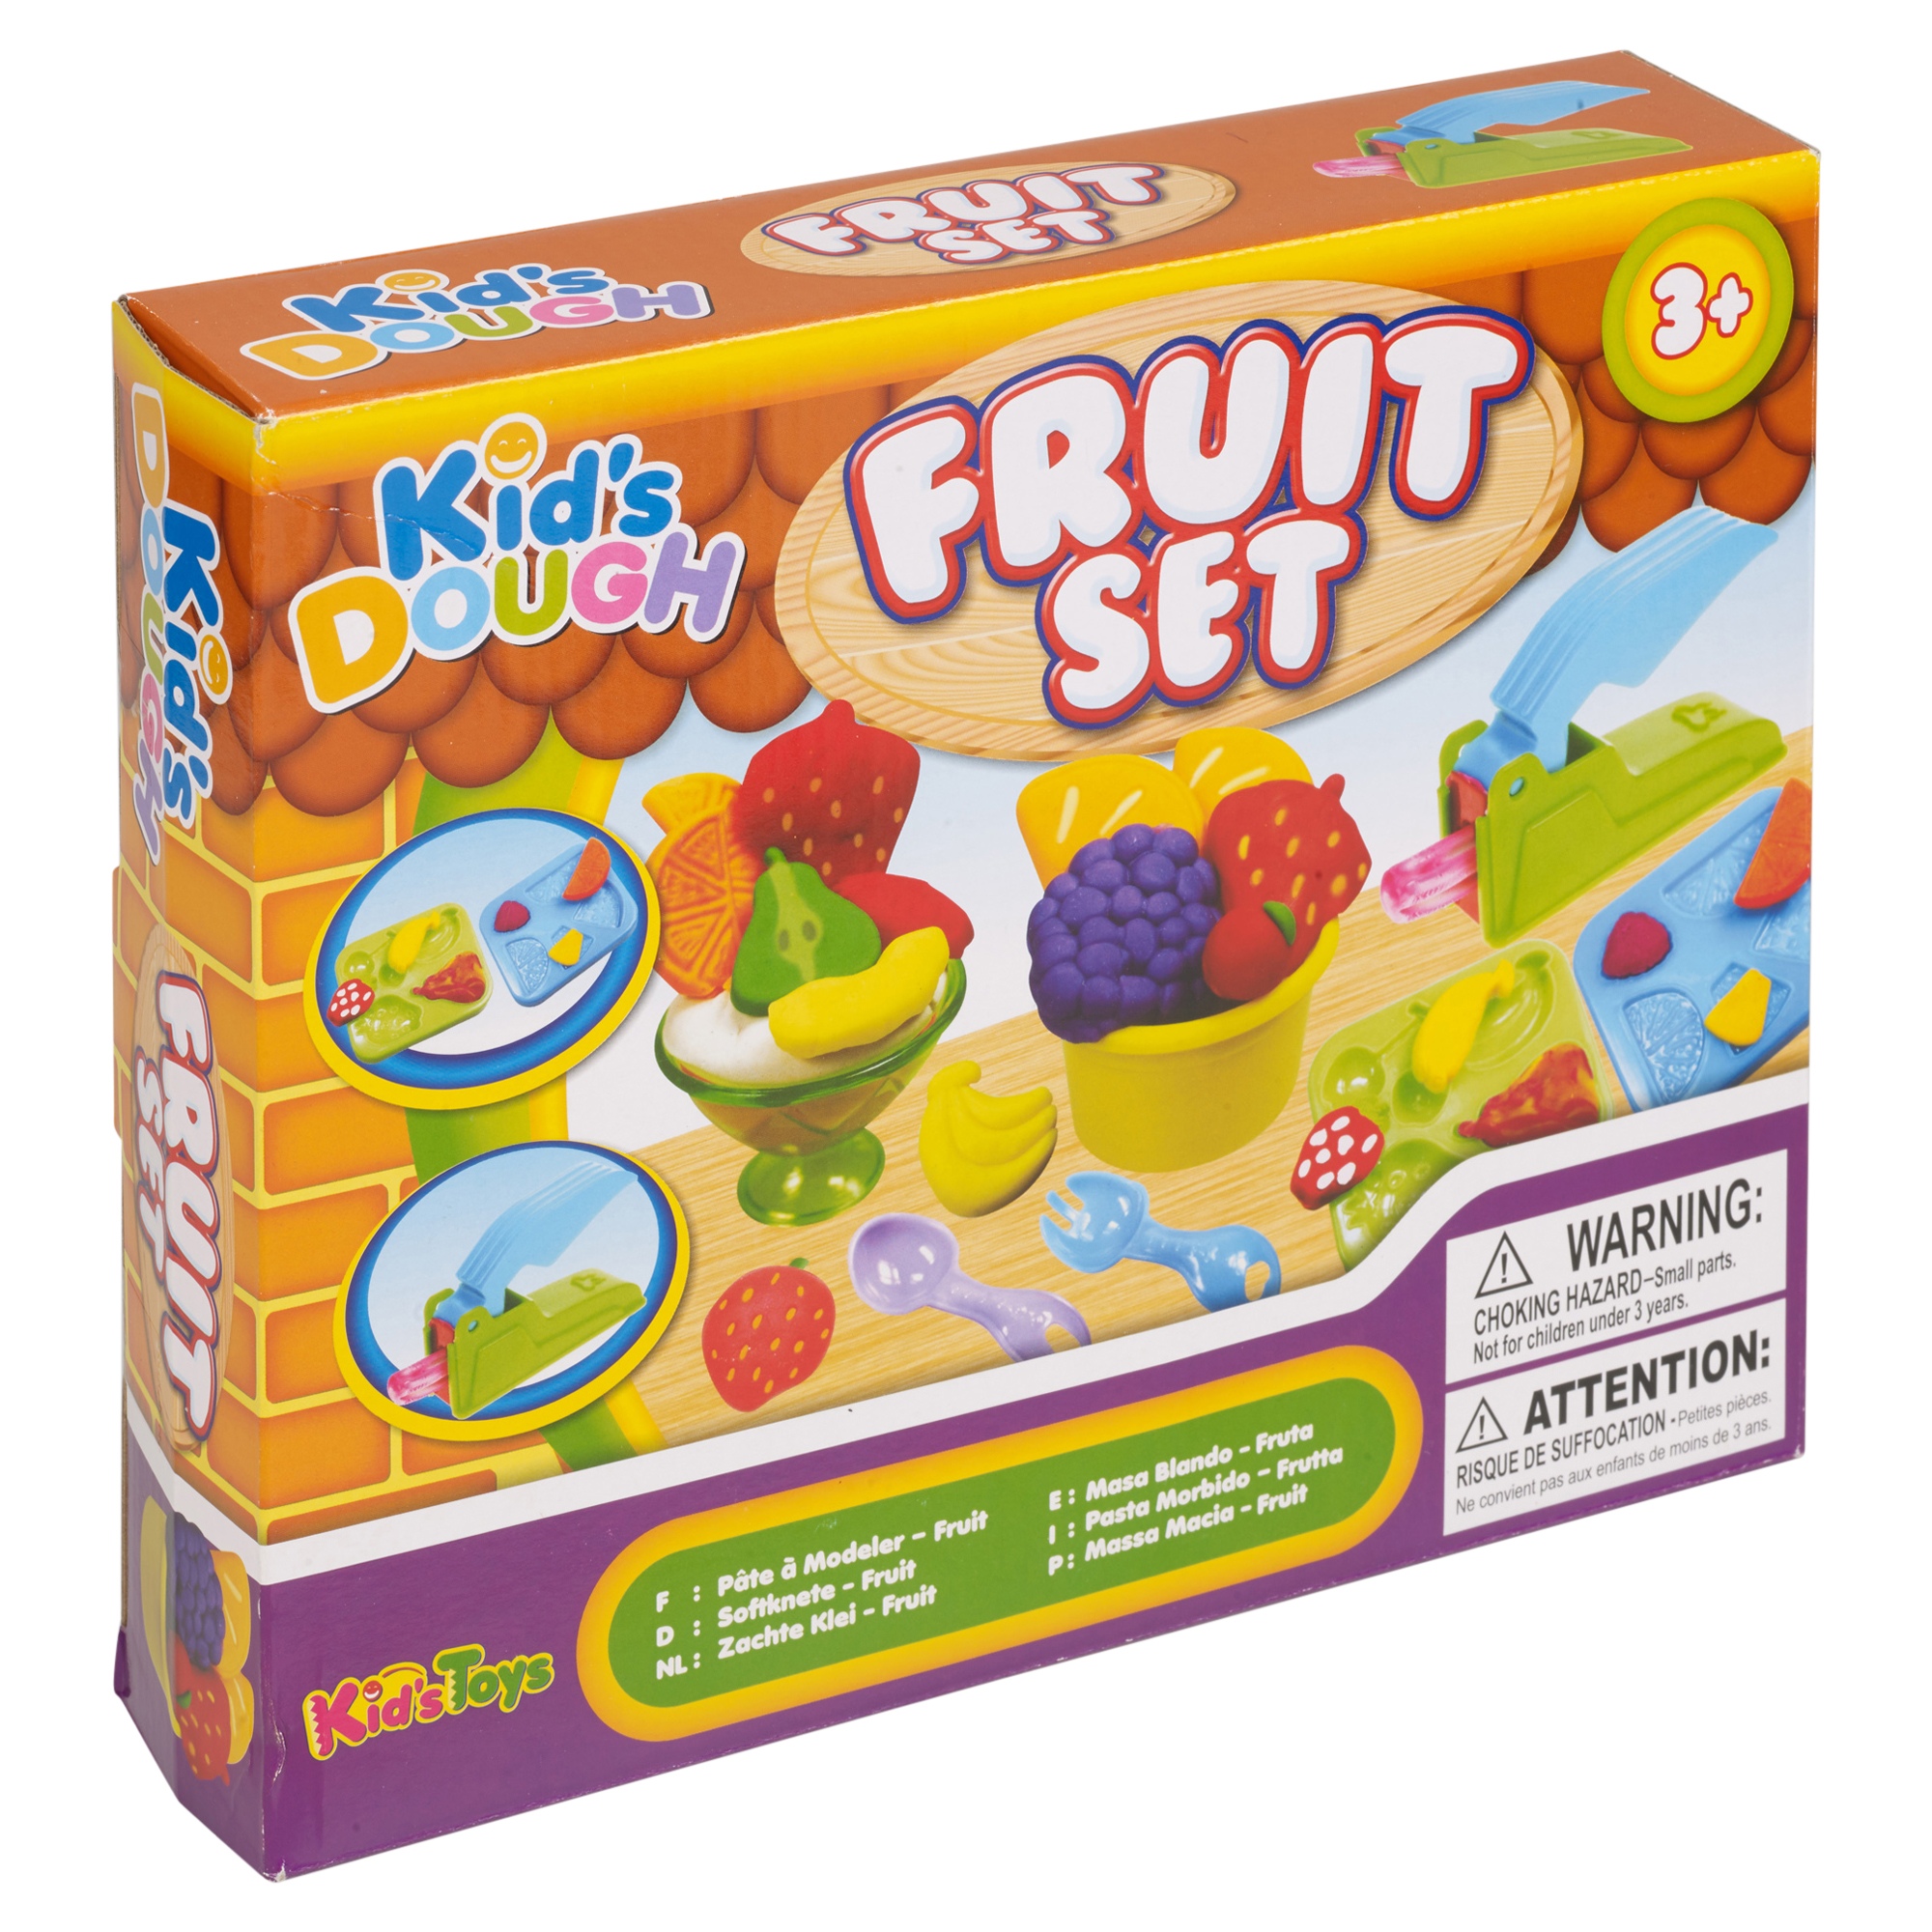 Купить блокс фрутс игрушки с кодом. Dough Блокс фруитс. Dough Dough Fruit. Play Doh фрукты. Roller Box Kids Dough.